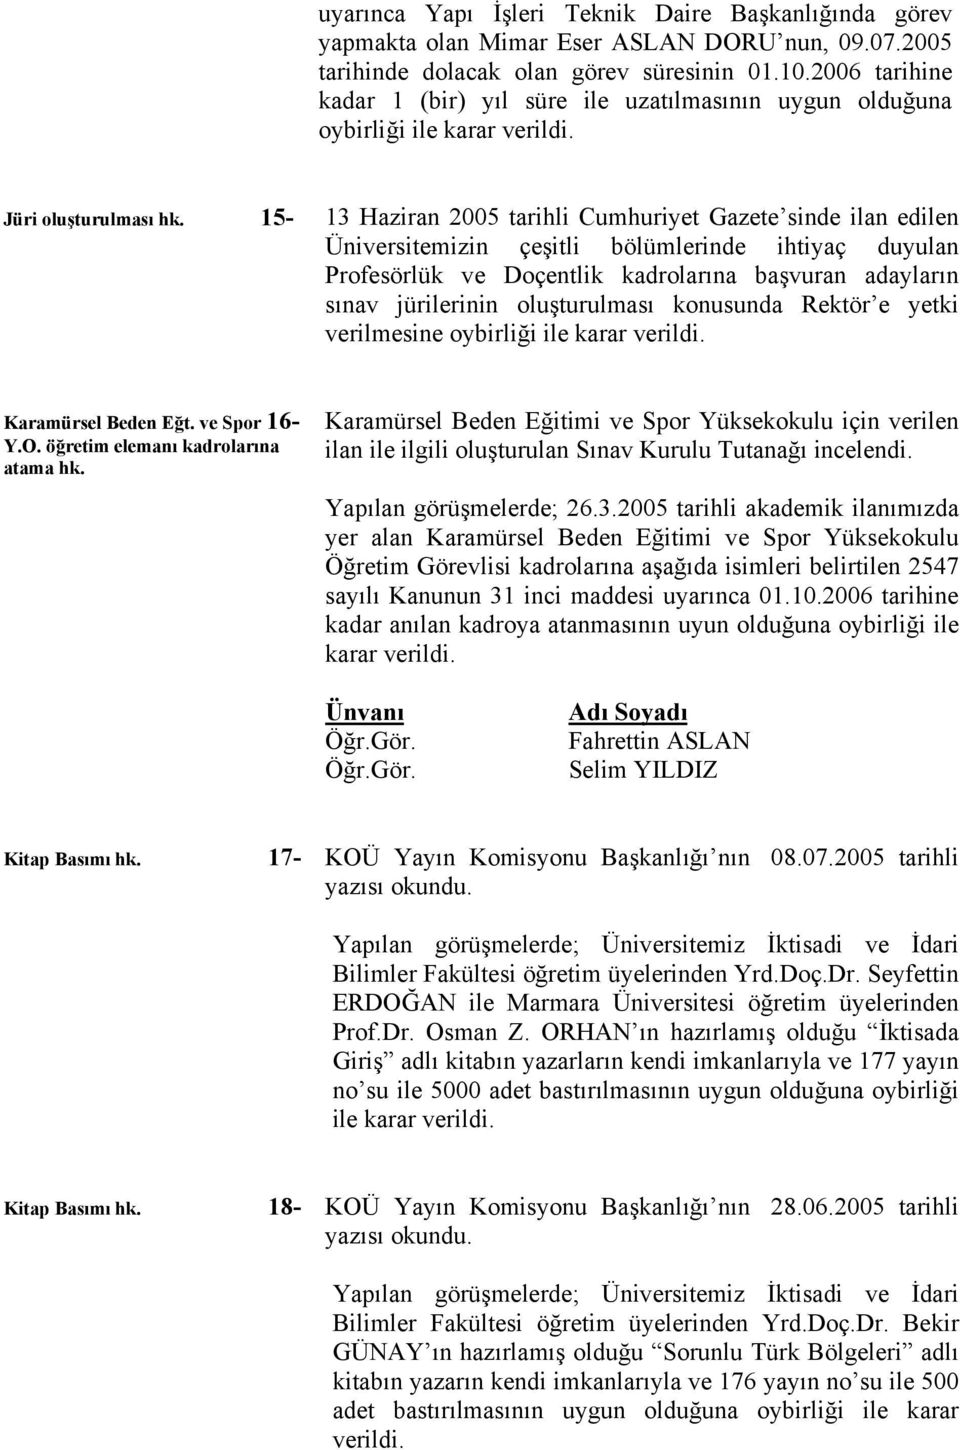 15-13 Haziran 2005 tarihli Cumhuriyet Gazete sinde ilan edilen Üniversitemizin çeşitli bölümlerinde ihtiyaç duyulan Profesörlük ve Doçentlik kadrolarına başvuran adayların sınav jürilerinin